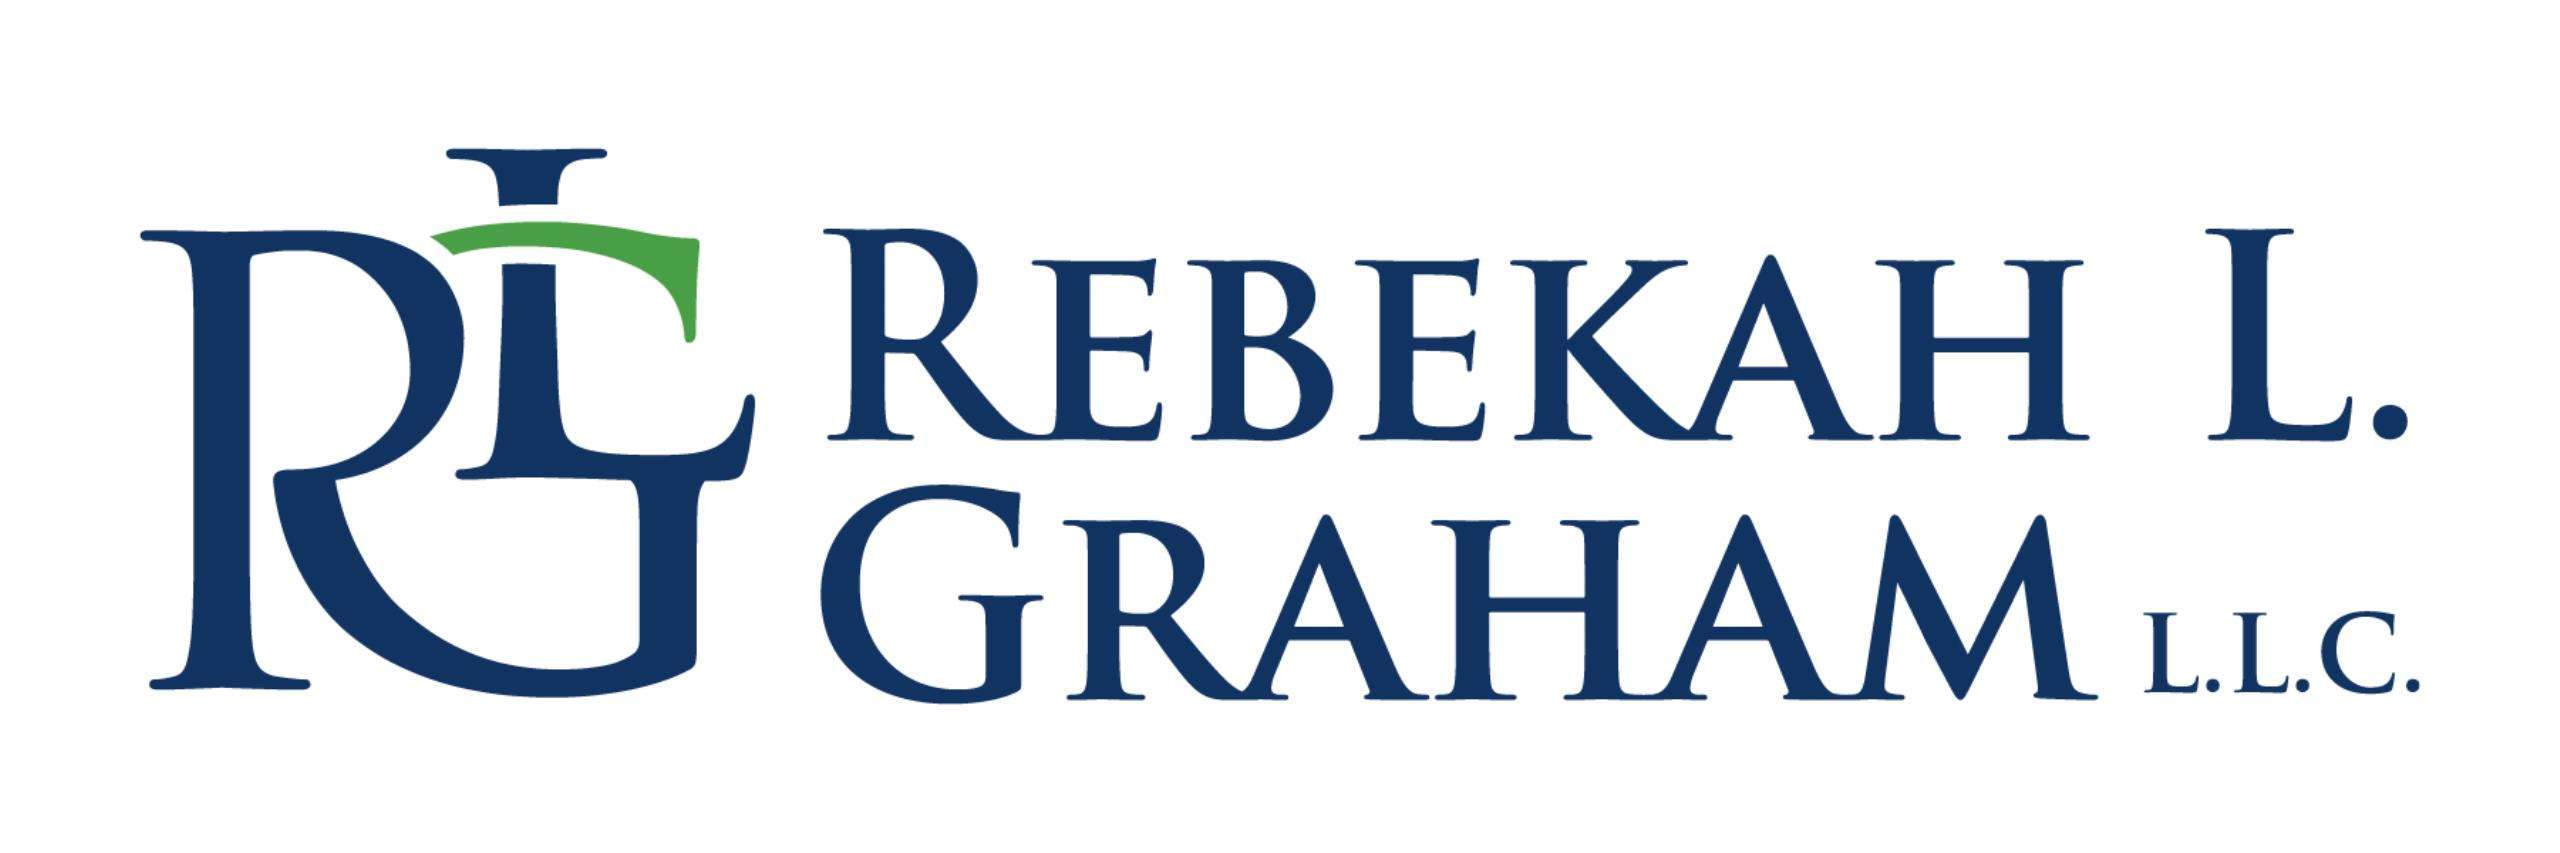 Rebekah L. Graham & Associates Logo